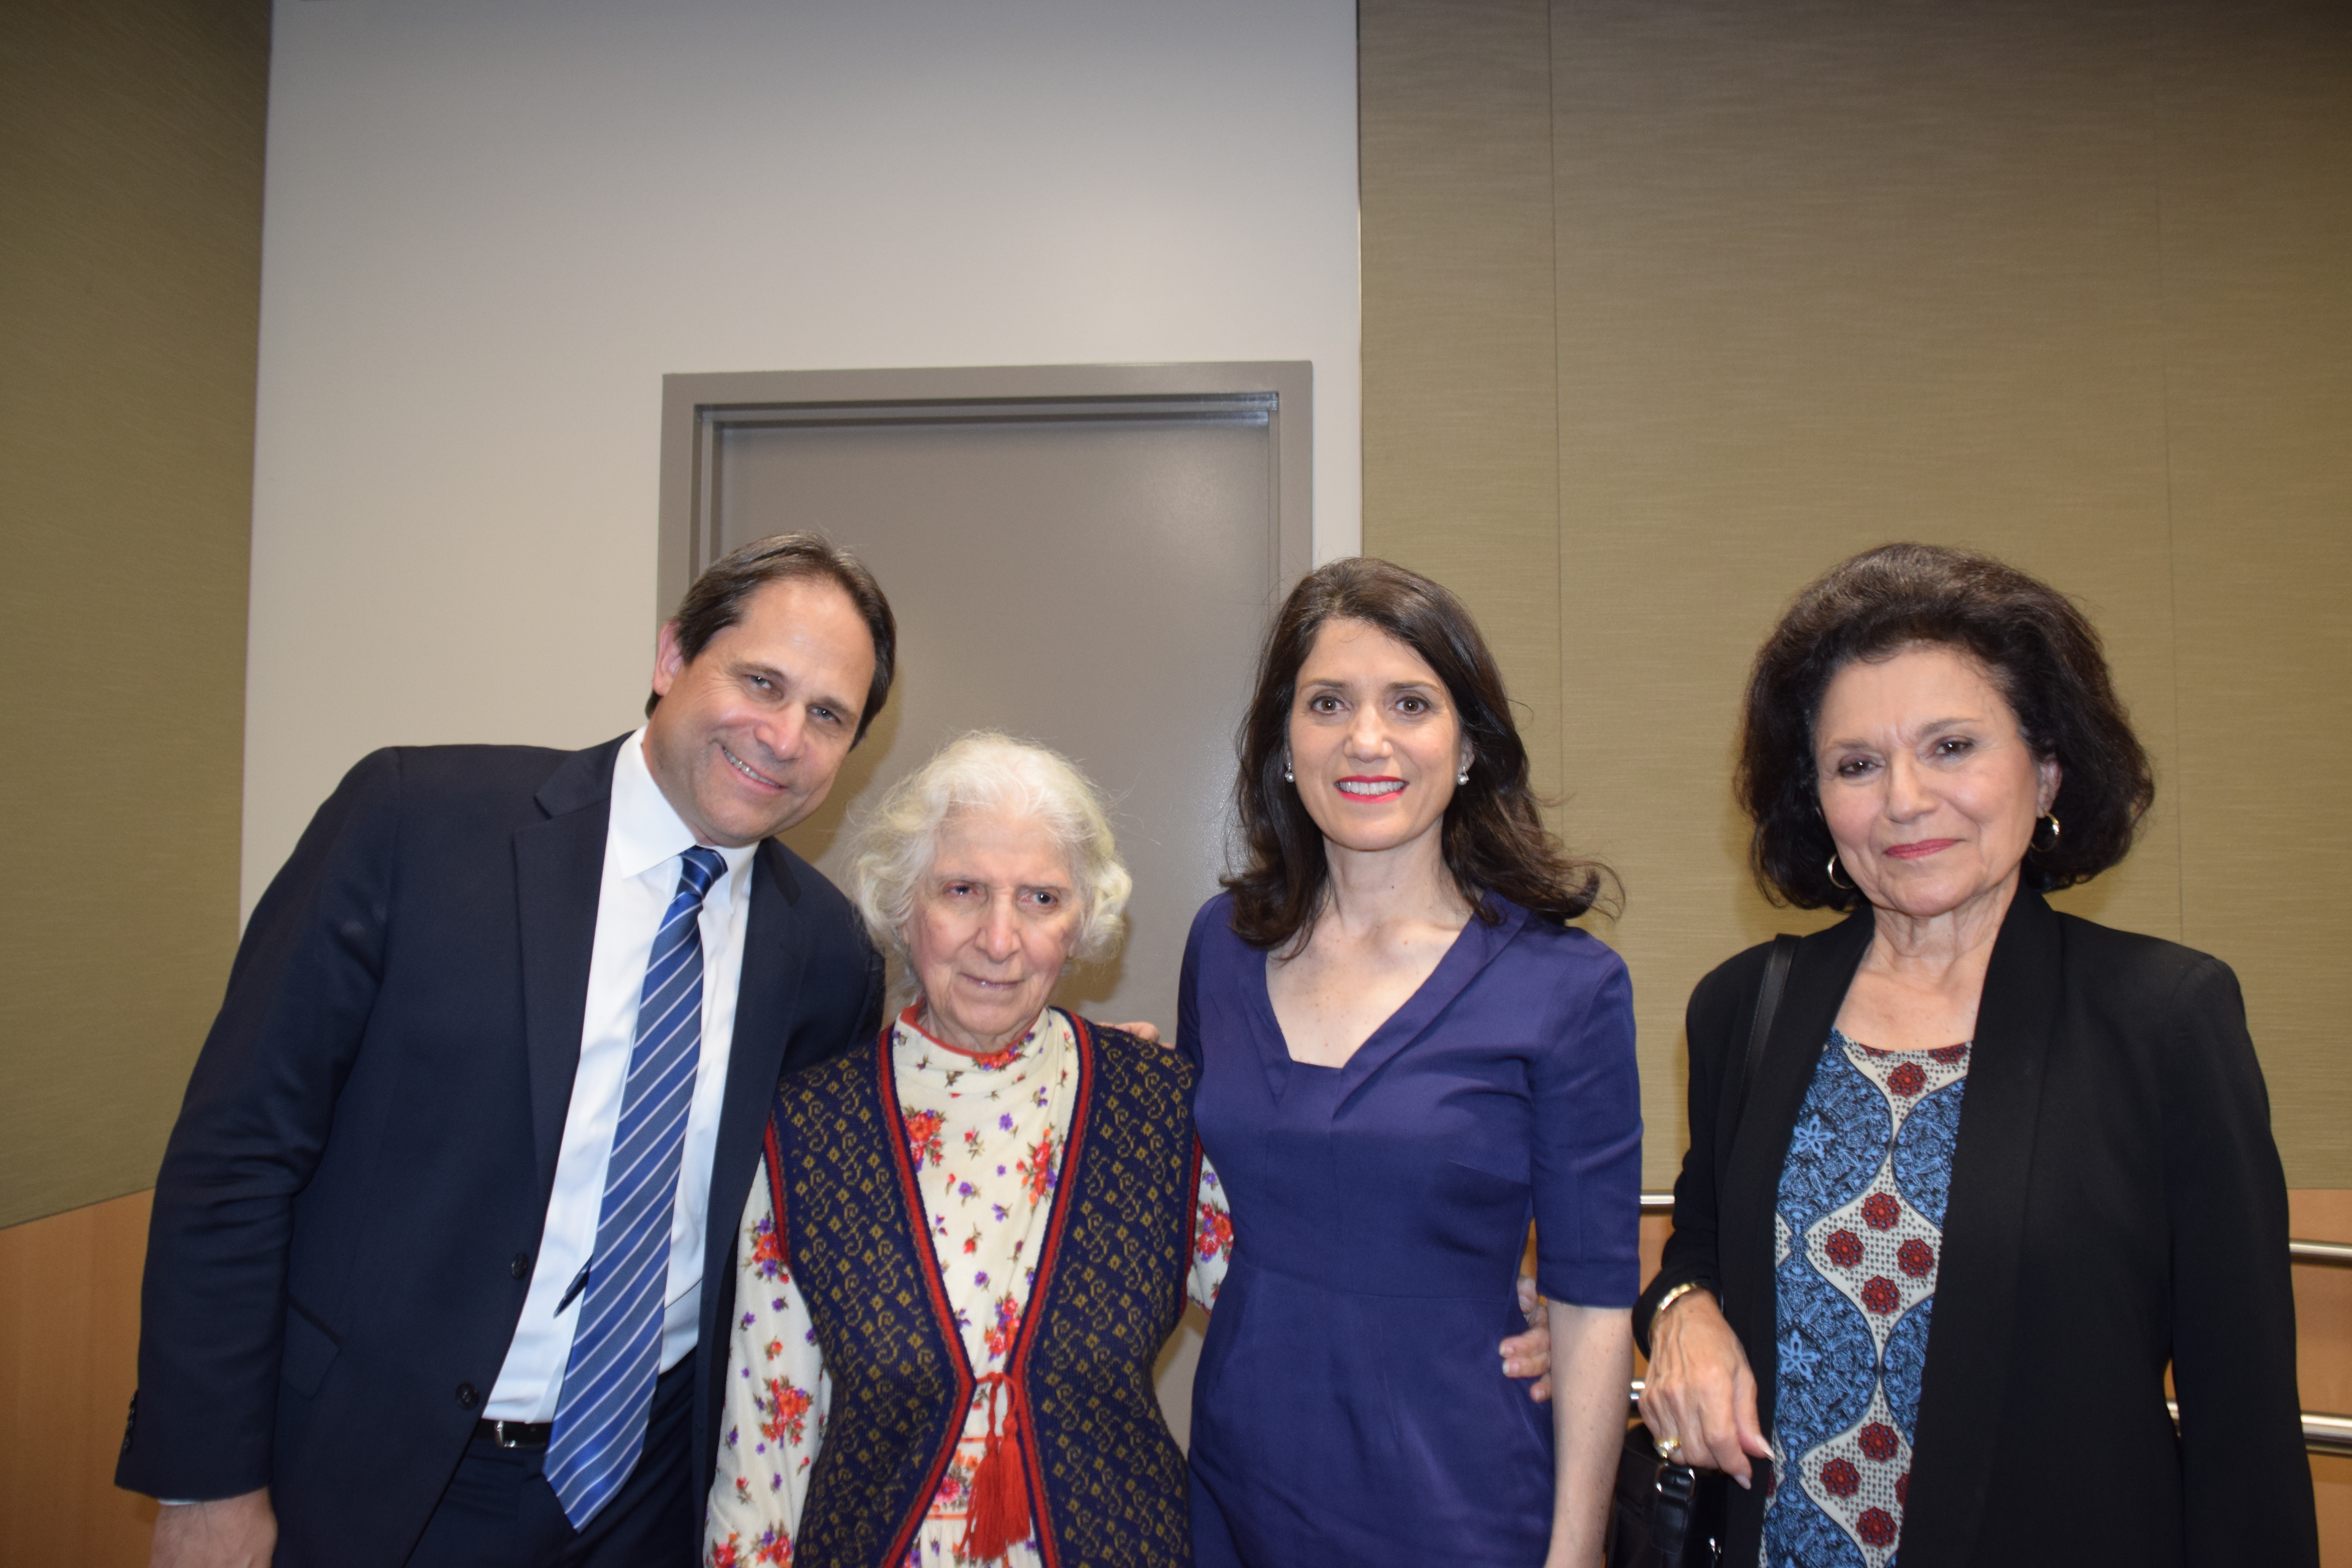 From left: Ari Zev, survivor Sara Chitjian, Carla Garapedian and Virginia Garapedian